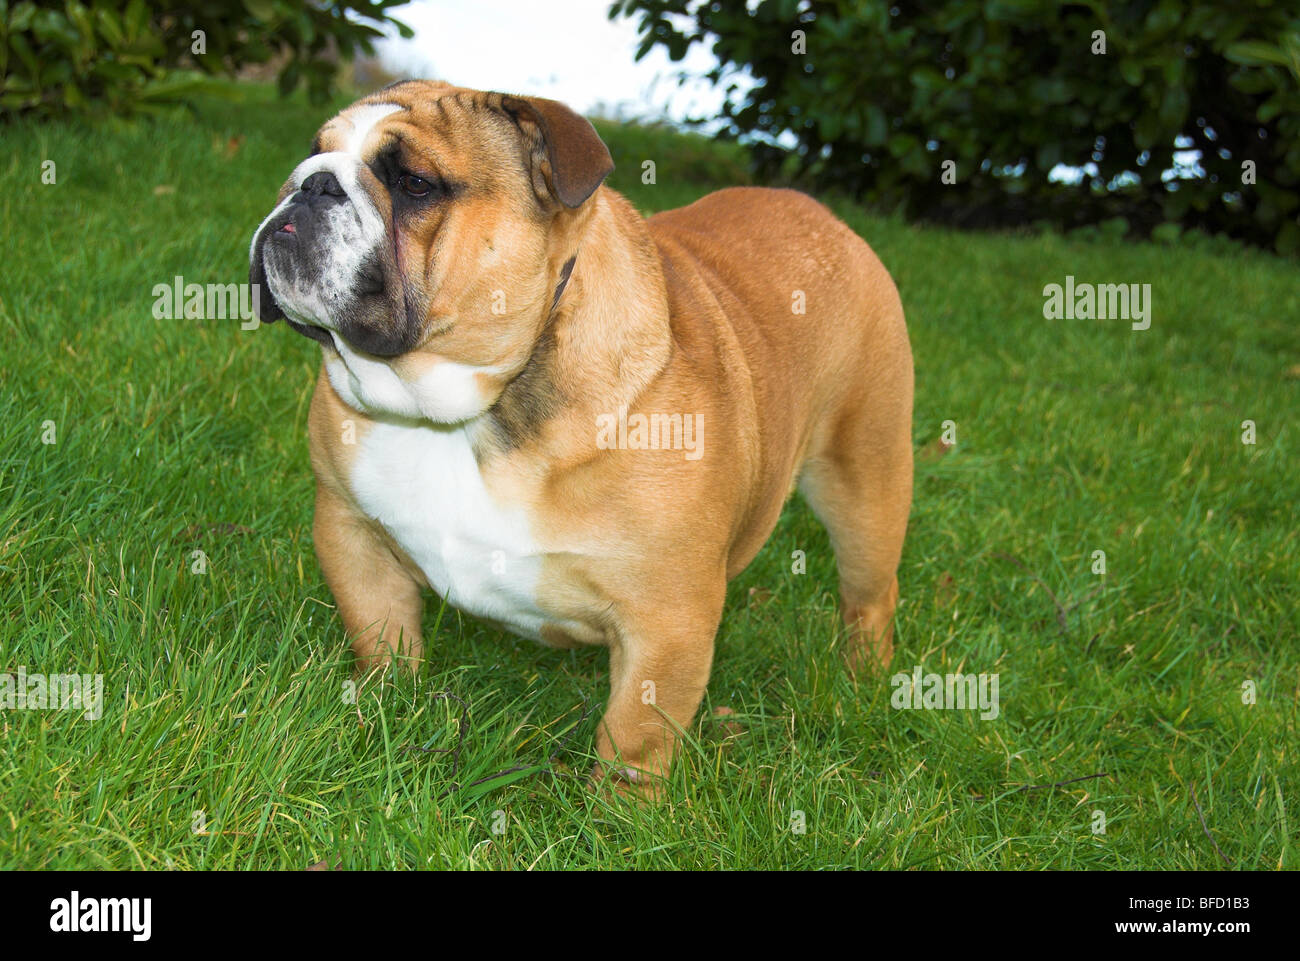 Bulldog inglesi o Bulldog inglese, è una dimensione medio-razza di cane che ha avuto origine in Inghilterra. Foto Stock